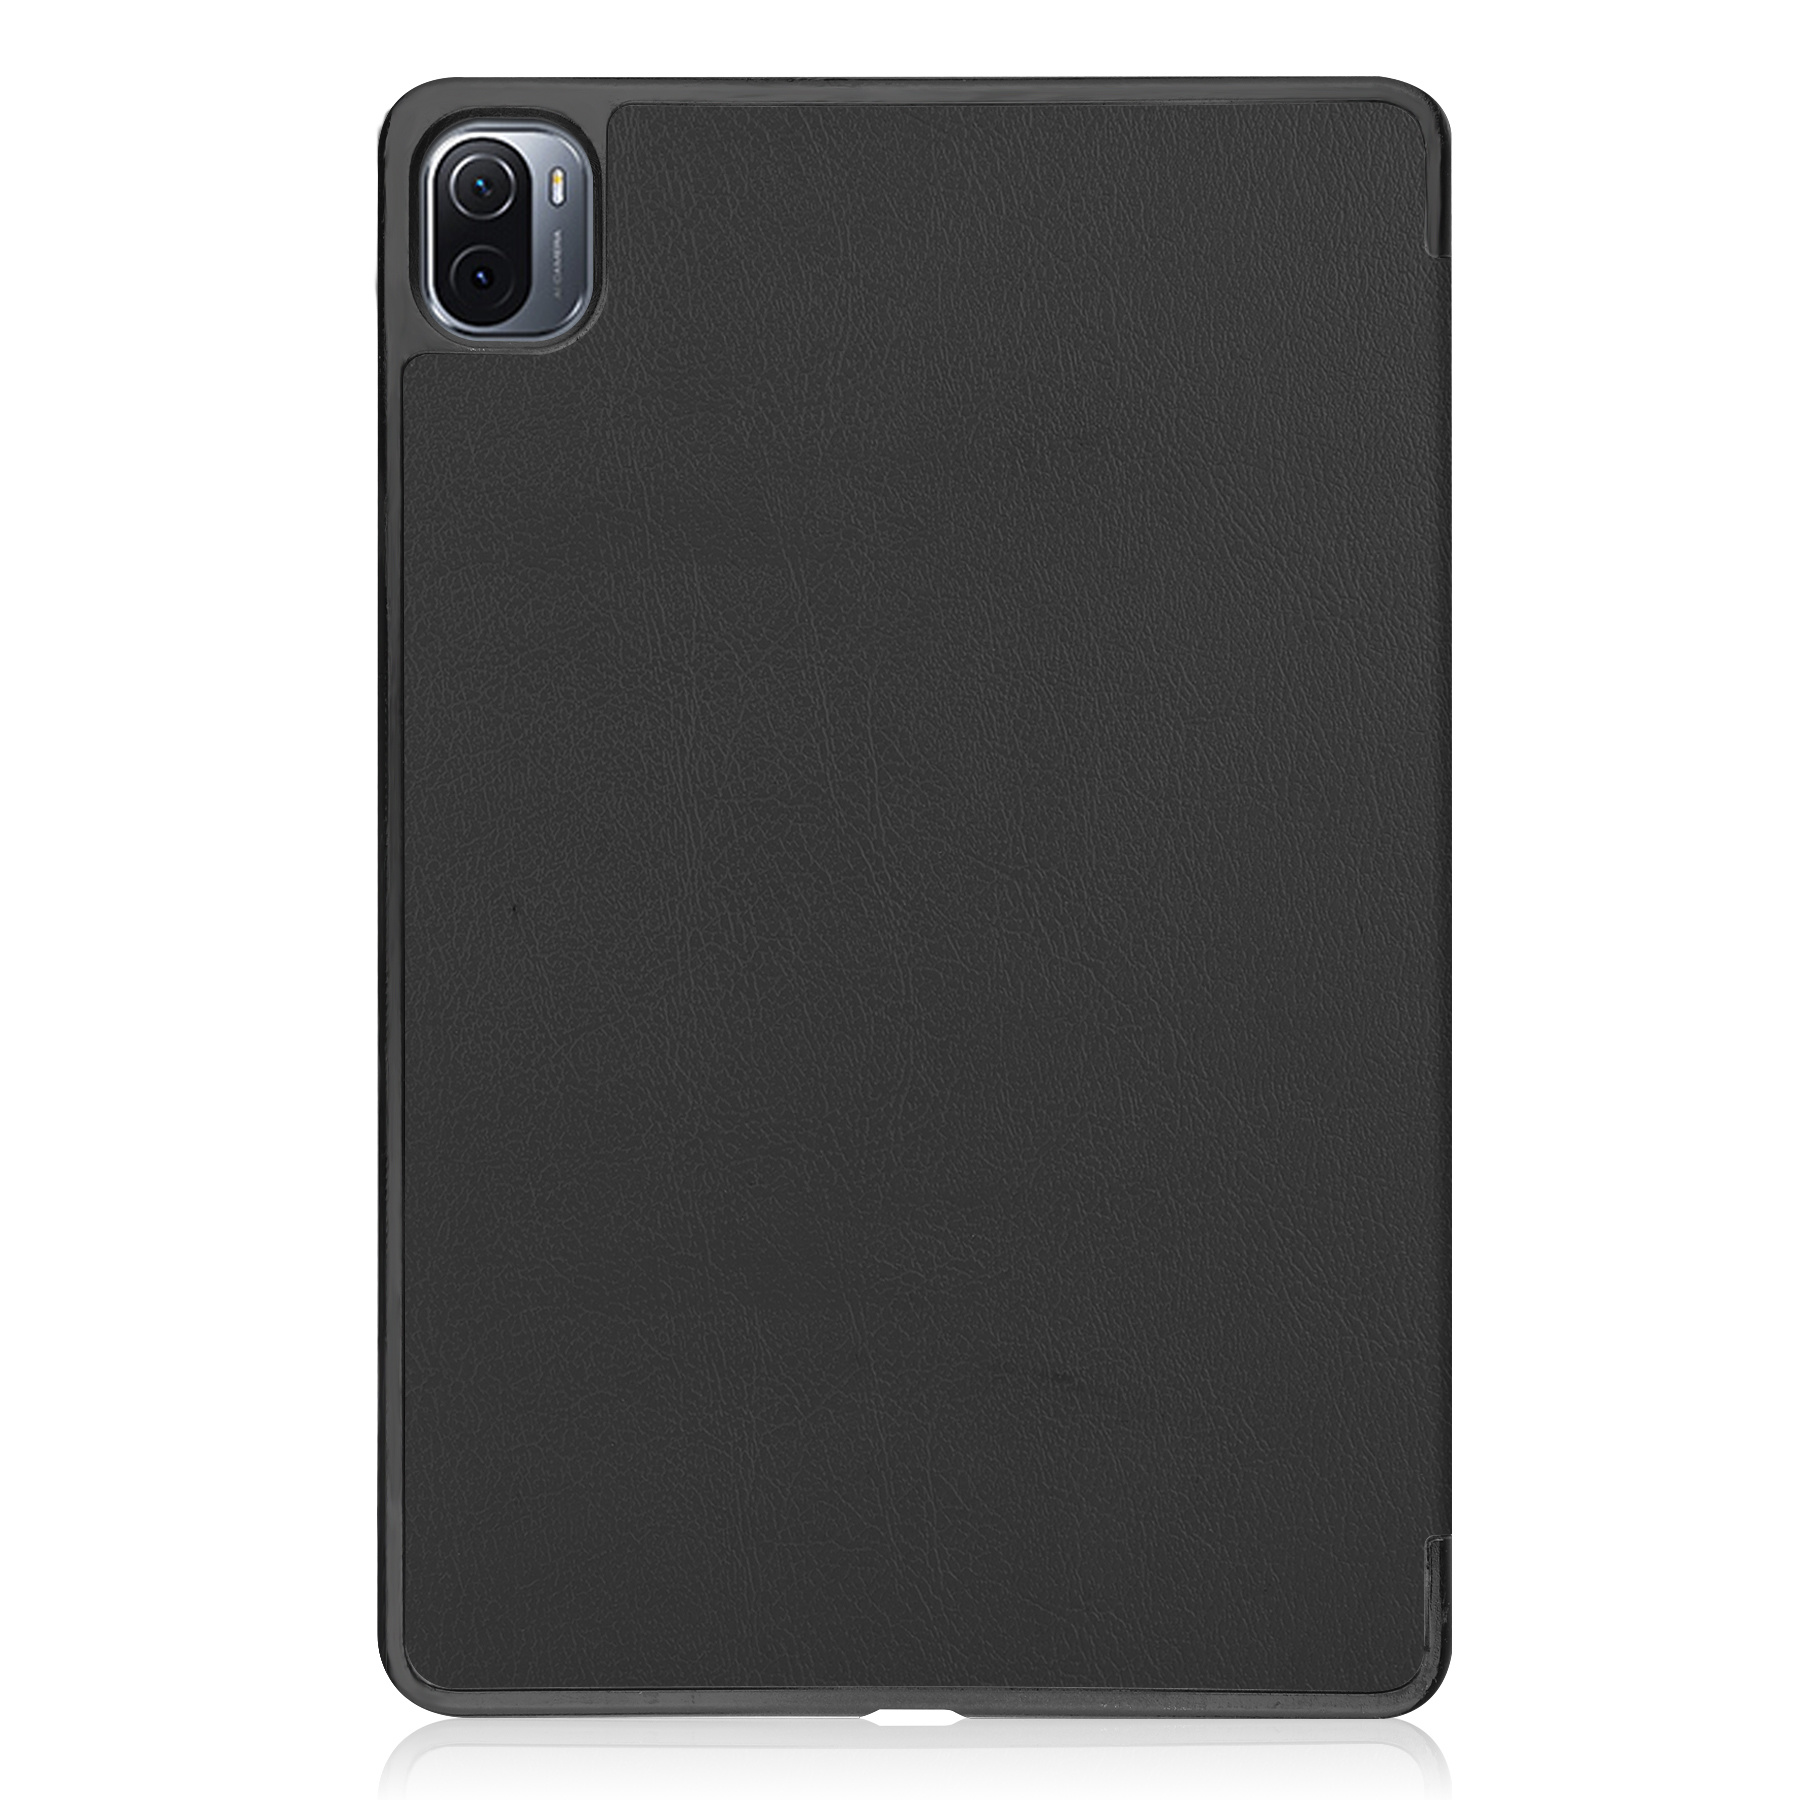 Nomfy Xiaomi Pad 5 Hoes Book Case Cover Met Screenprotector - Xiaomi Pad 5 Hoesje Met Beschermglas - Zwart